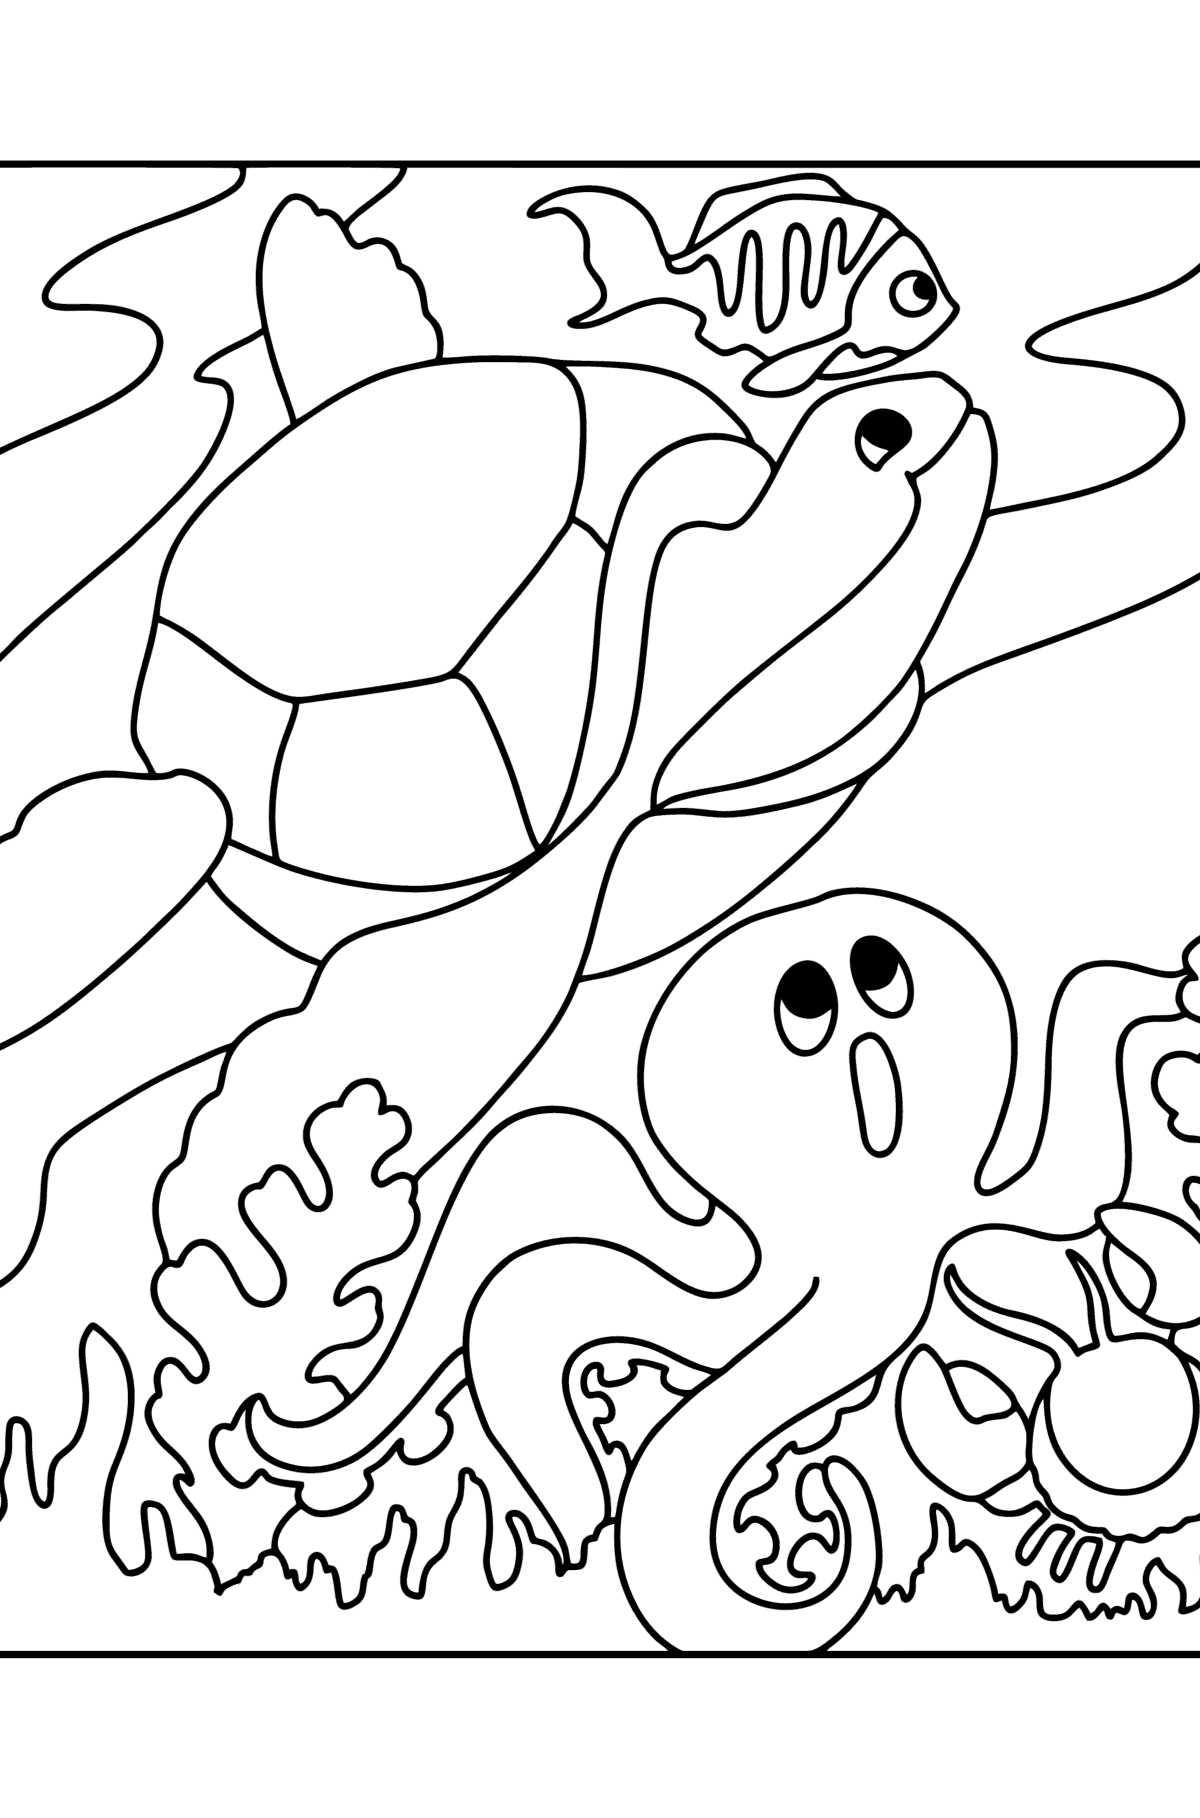 Disegno di Pesce, tartaruga, granchio e polpo da colorare - Disegni da colorare per bambini